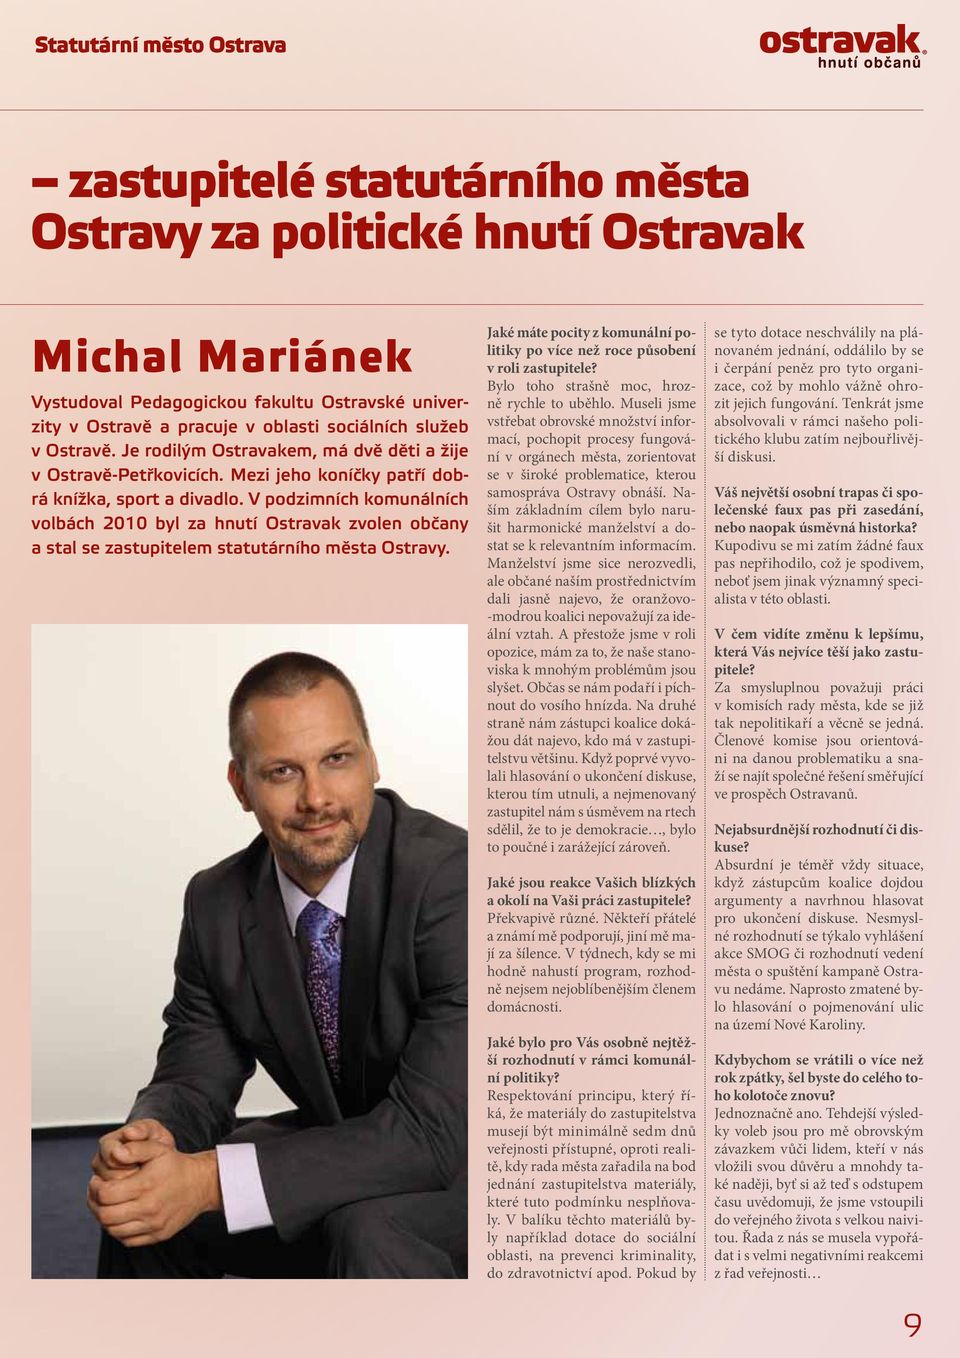 V podzimních komunálních volbách 2010 byl za hnutí Ostravak zvolen občany a stal se zastupitelem statutárního města Ostravy.